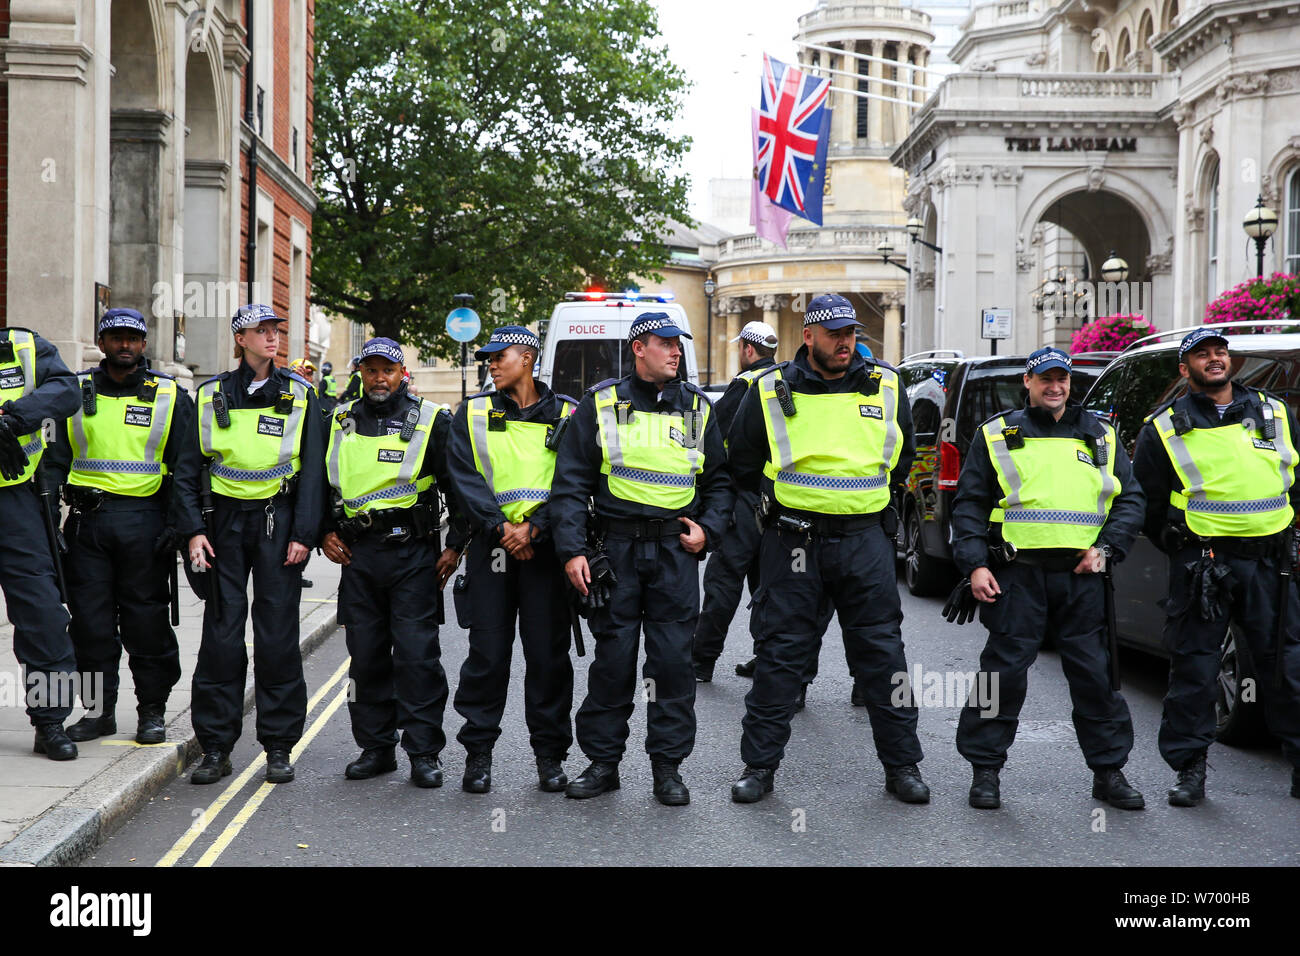 Les agents de police montent la garde pendant la manifestation.un rassemblement à l'appui de l'extrême droite britannique Stephen Yaxley-Lennon, également connu sous le nom de Tommy Robinson, au centre de Londres. Tommy Robinson a été emprisonné le 11 juillet 2019 à Old Bailey pour outrage au tribunal. Banque D'Images